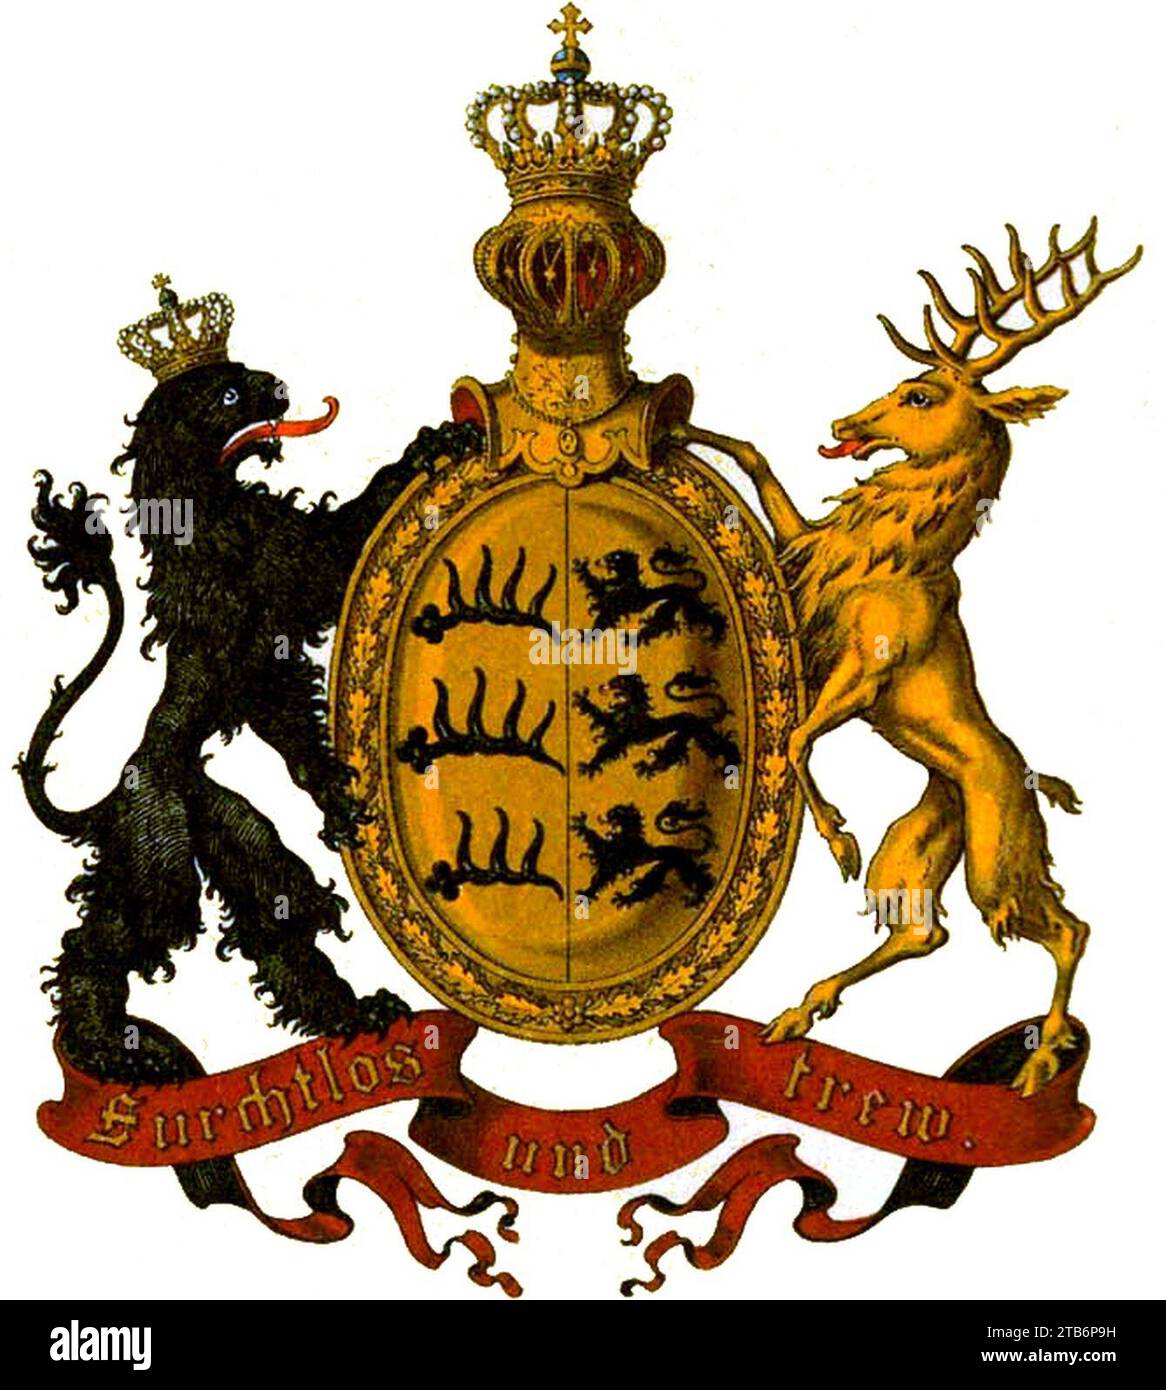 Wappen Deutsches Reich - Königreich Württemberg. Stock Photo